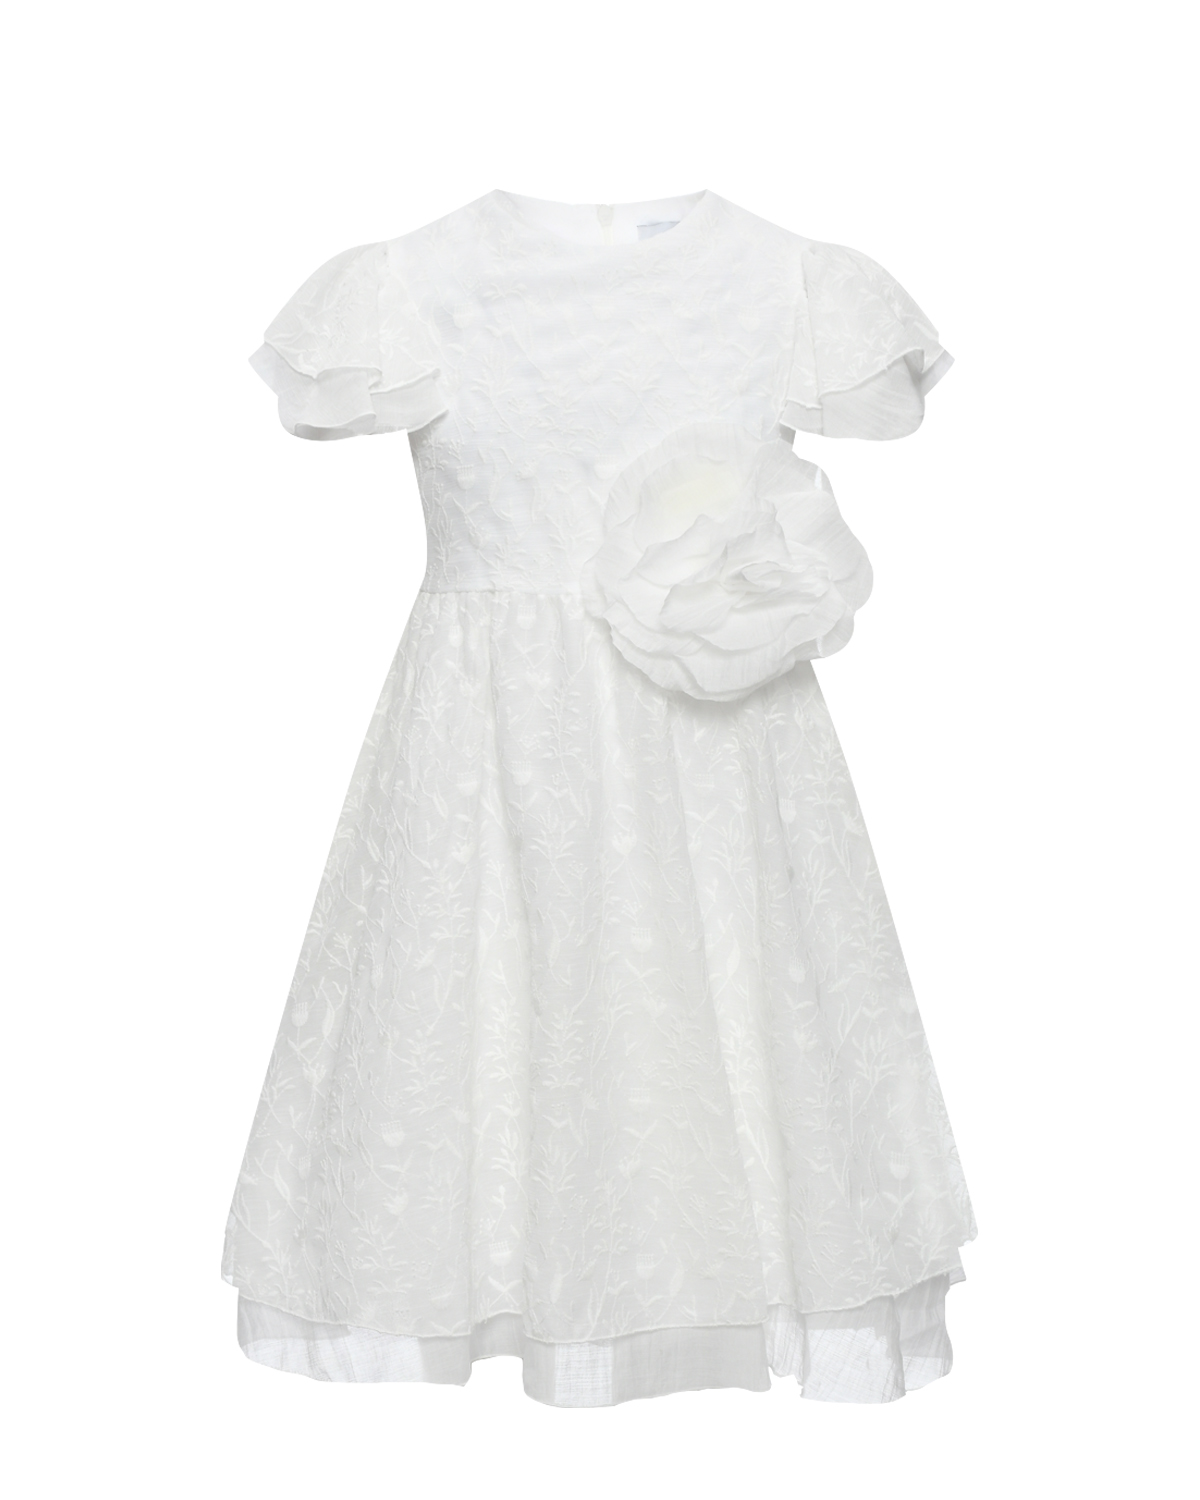 Платье с курпным цветком на поясе, белое Ermanno Scervino, размер 140 - фото 1